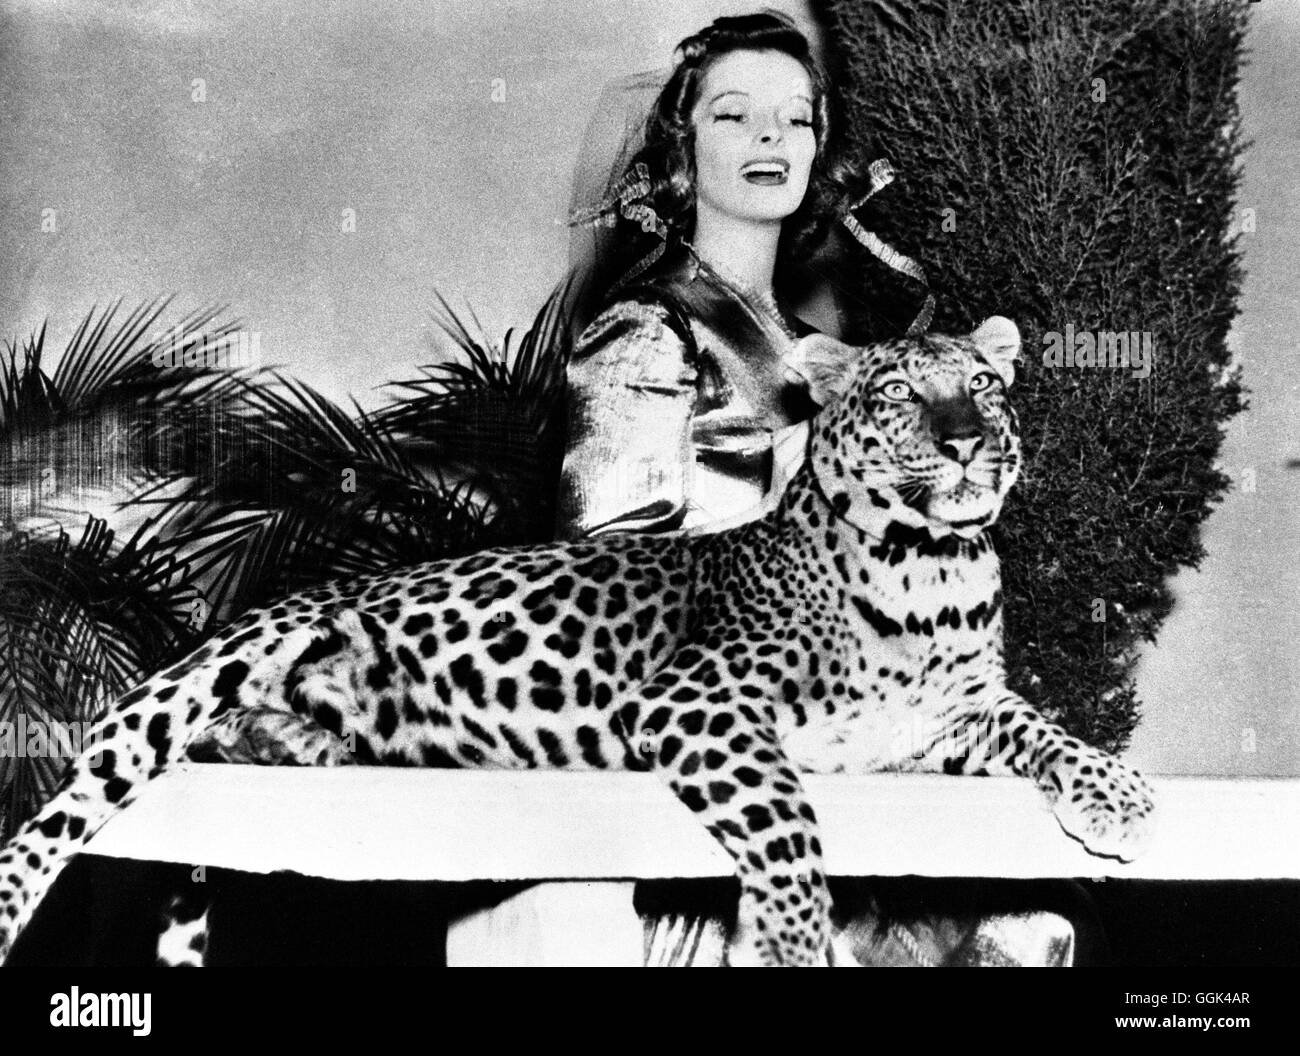 LEOPARDEN KÜSST MAN NICHT Bringing up Baby USA 1938 - Howard Hawks KATHARINE HEPBURN als Susan Vance mit Leopard 'Baby', in 'Leoparden küßt man nicht', 1938. Regie: Howard Hawks Stock Photo